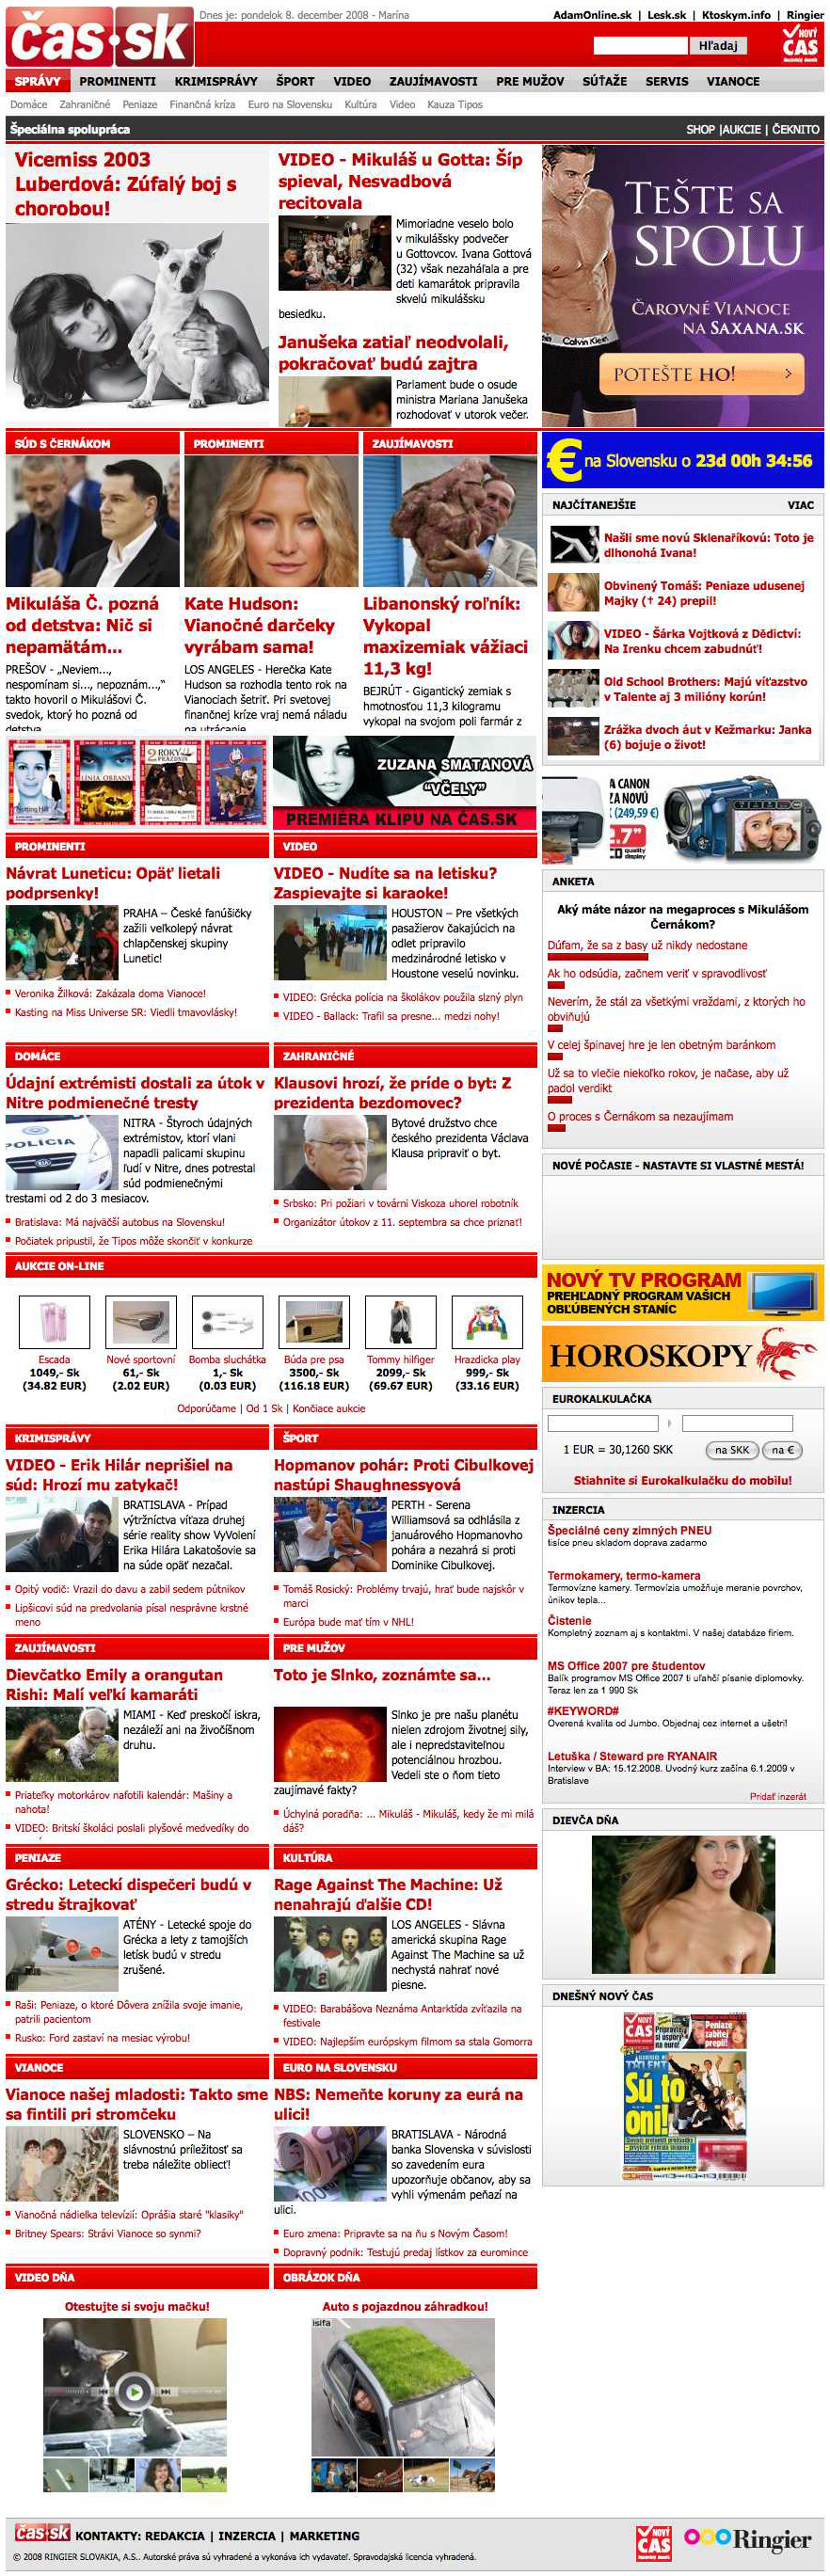 cas.sk titulka do decembra 2008